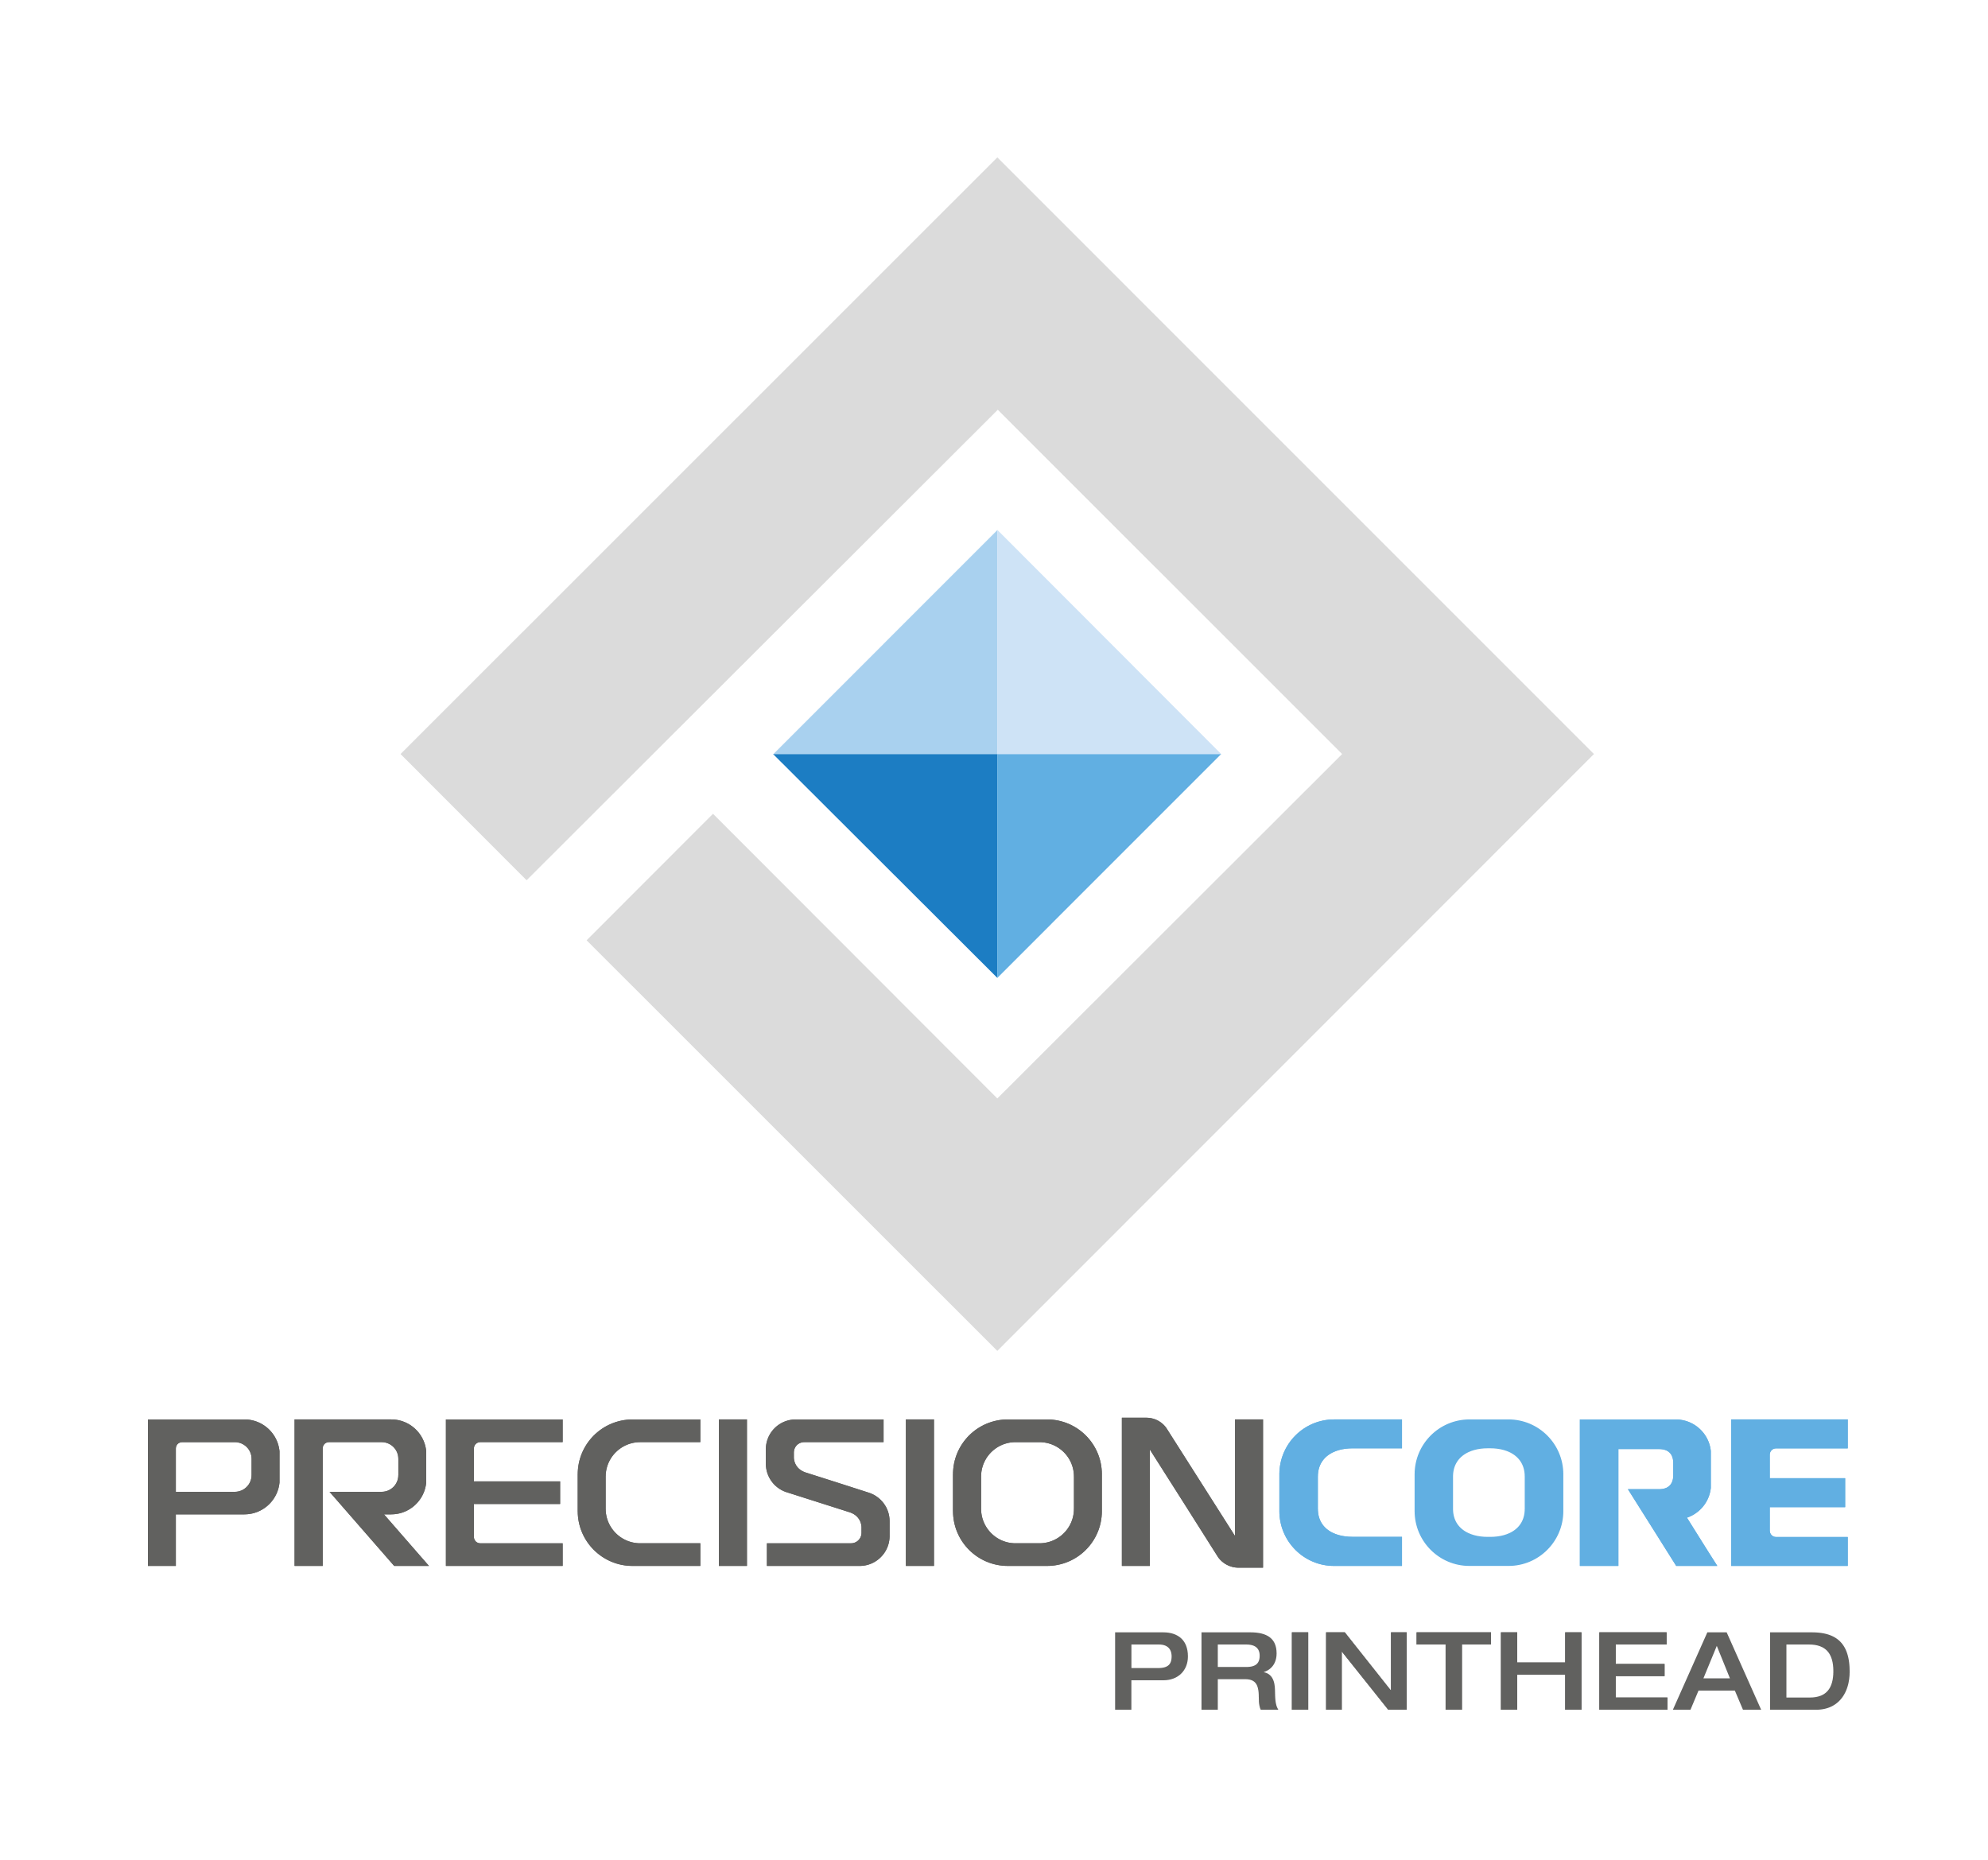 Precisioncore printhead